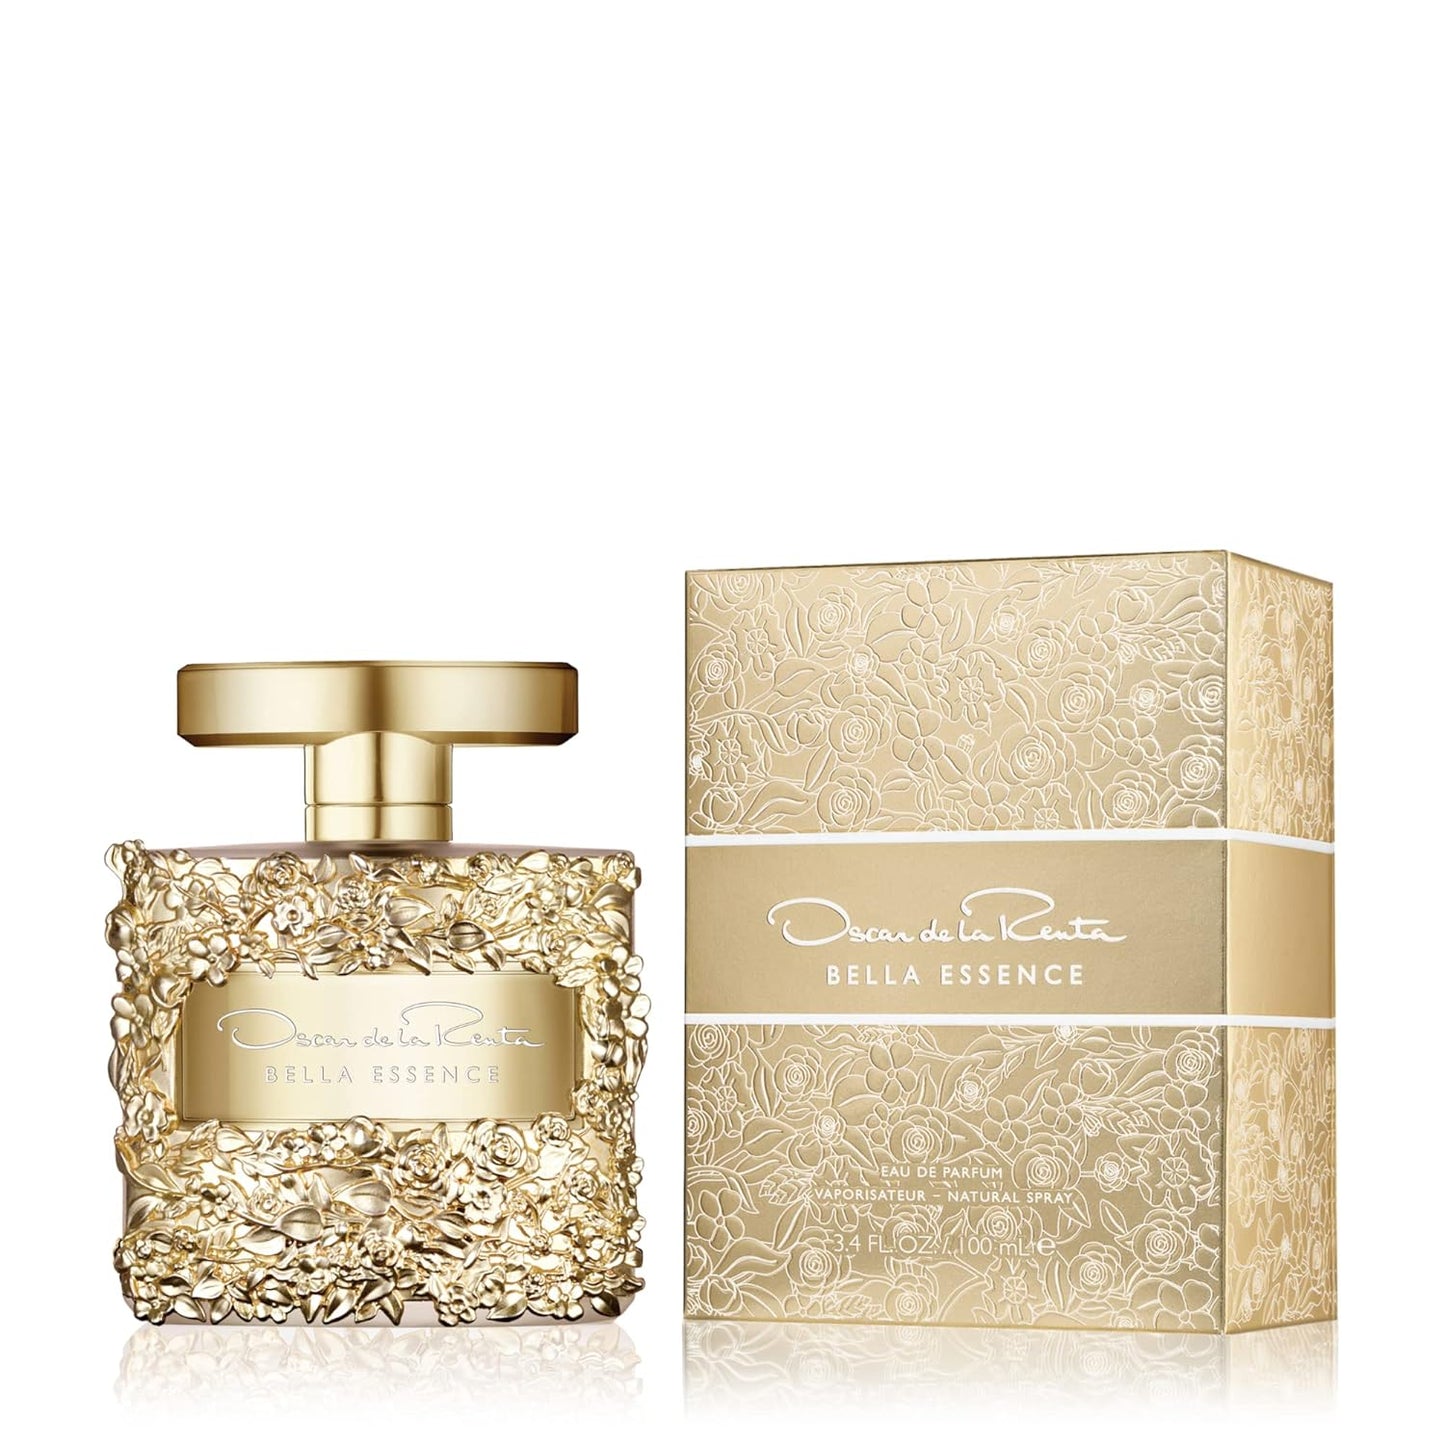 Oscar de la Renta Bella Essence Eau de Parfum Perfume Spray for Women